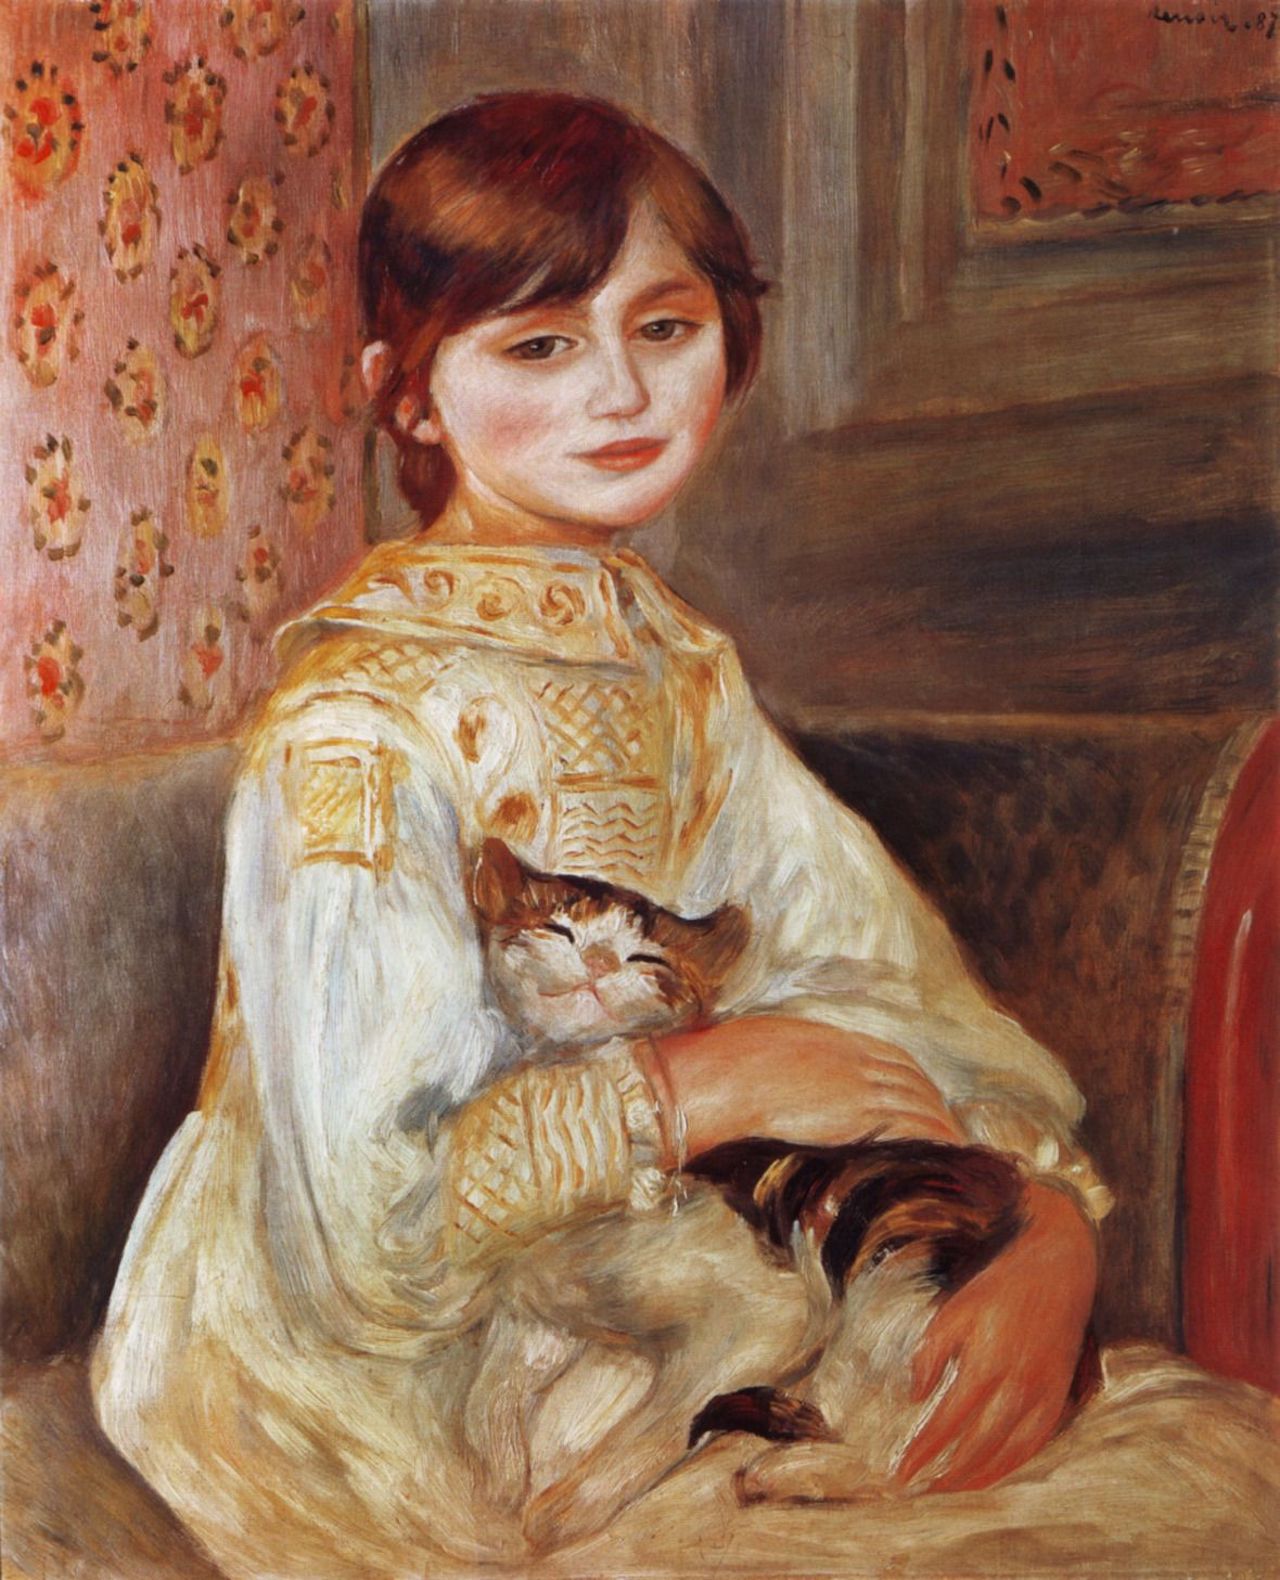 Kind mit Katze by Pierre-Auguste Renoir - 1887 - 54 x 65 cm Musée d'Orsay